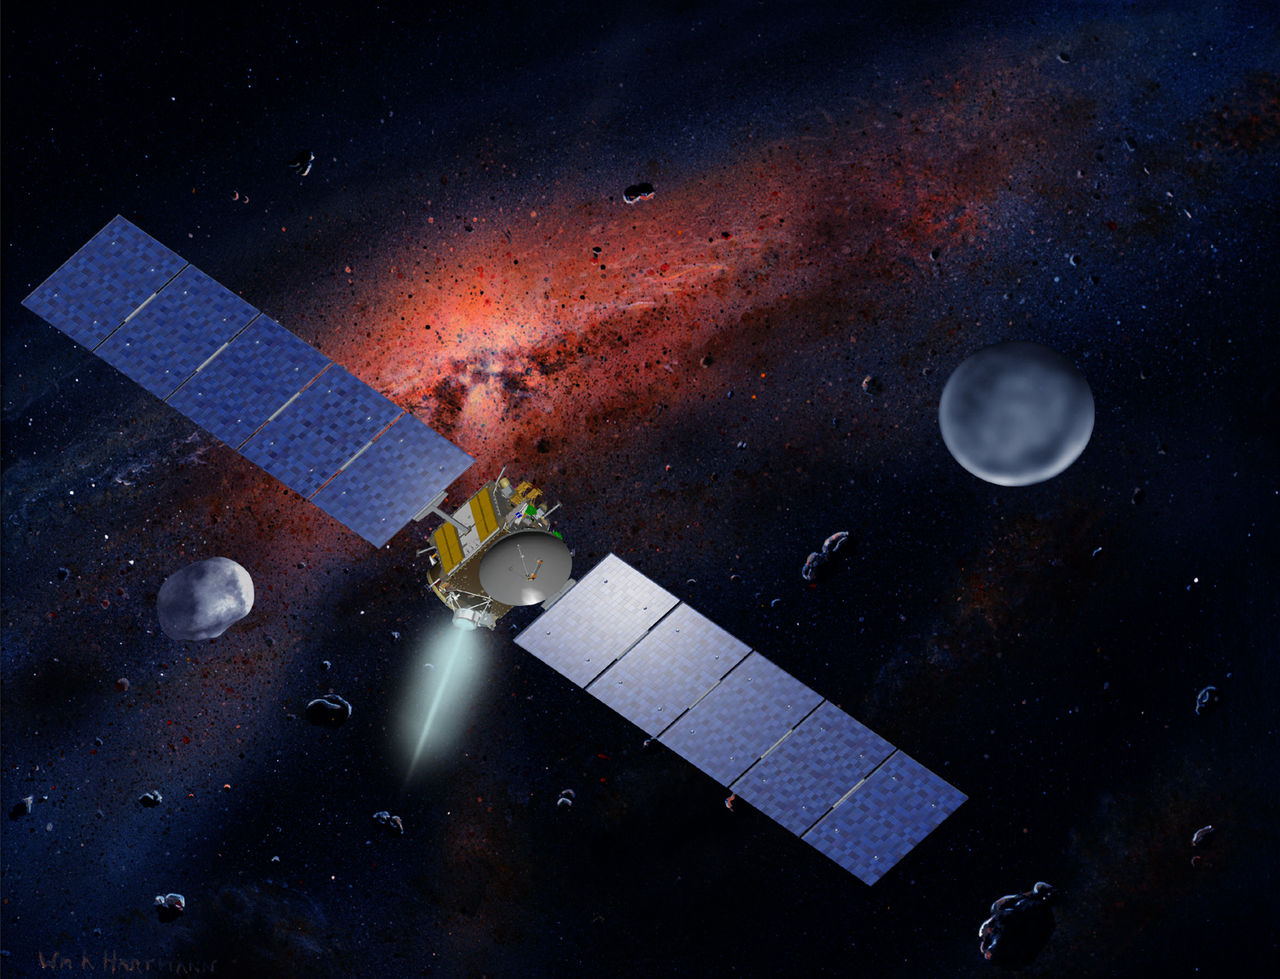 С космодрома Канаверал с помощью ракеты-носителя Дельта-2 запущена американская АМС Dawn, предназначенная для исследования астероидов Веста и Церера